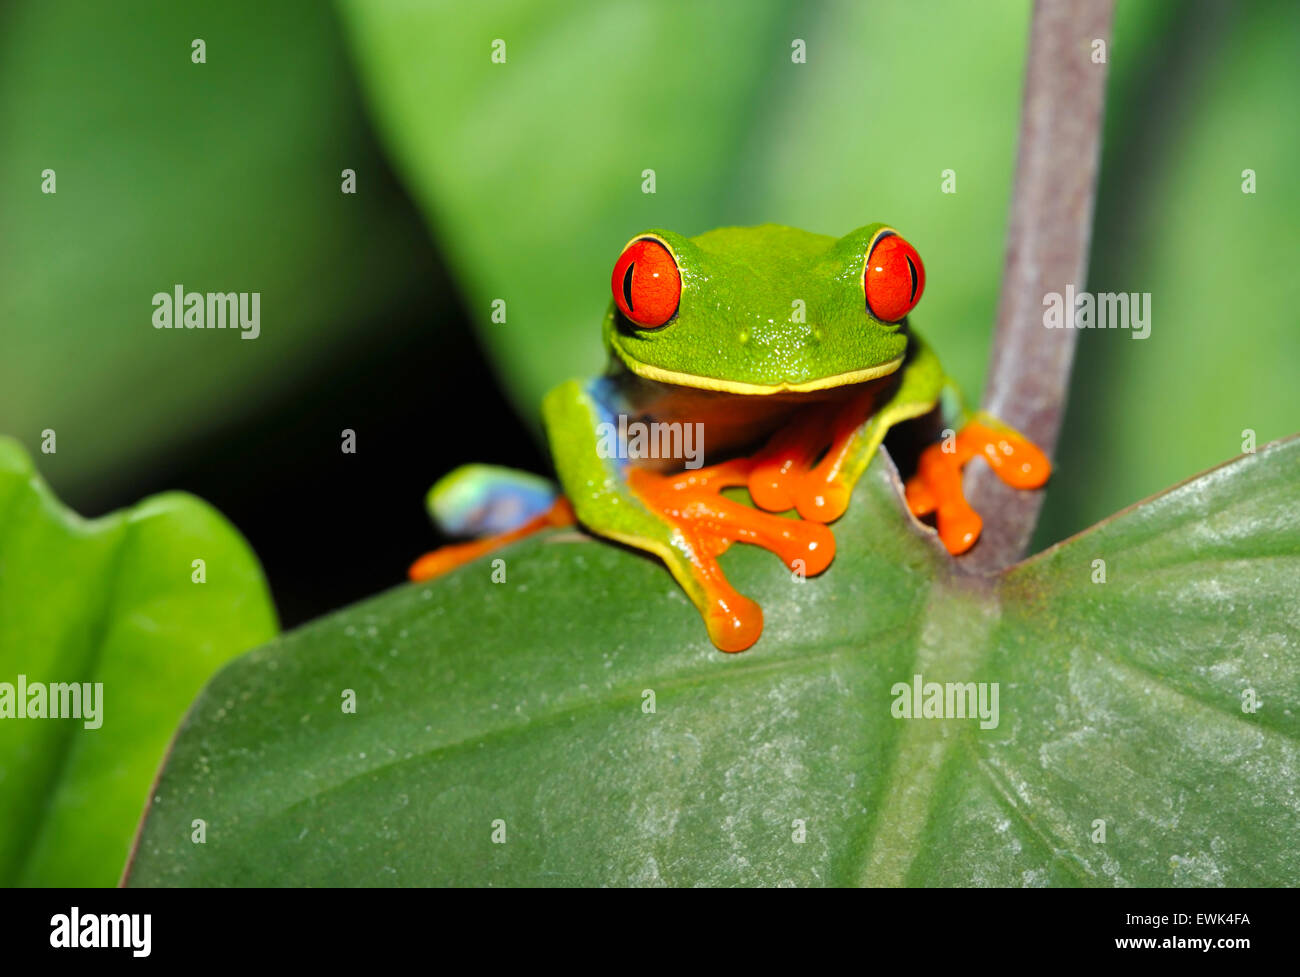 Rote Augen Laubfrosch oder rote Augen grüne Frosch oder Agalychnis  Callidryas seltsam aussehende sitzen auf grünes Blatt, Corocovado costarica  Stockfotografie - Alamy